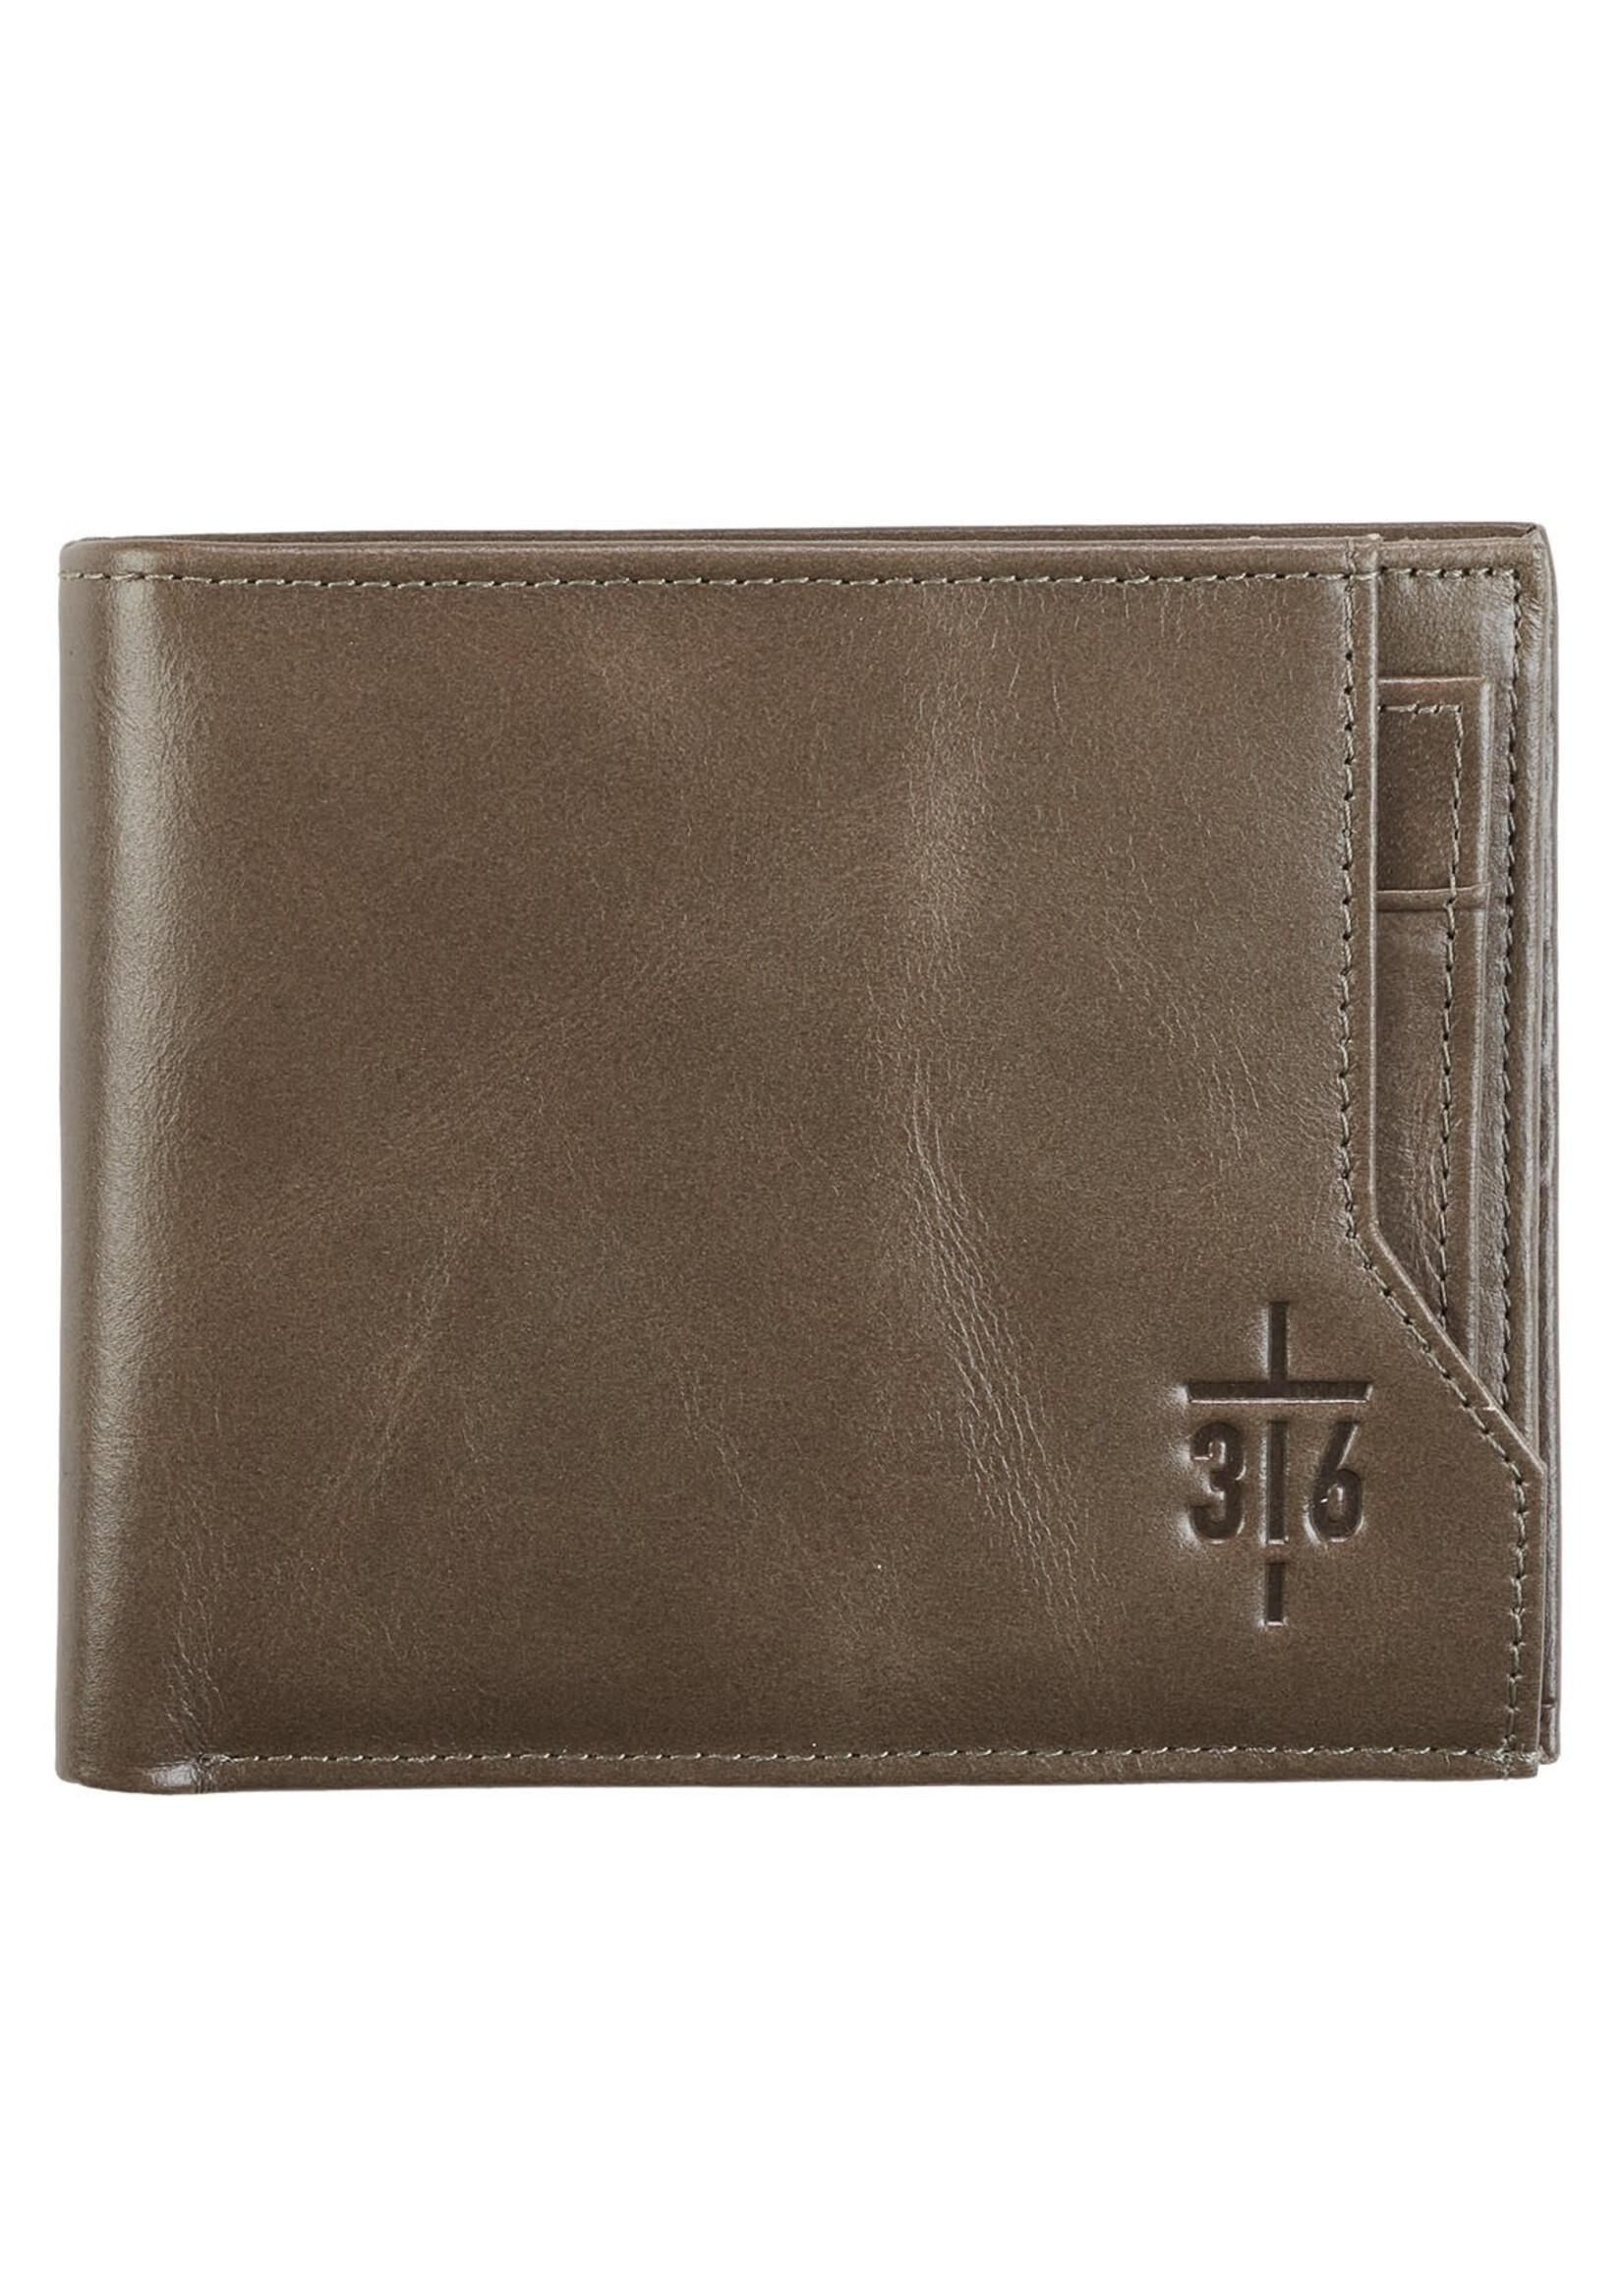 John 3:16 Cross Taupe Full Grain Leather Wallet